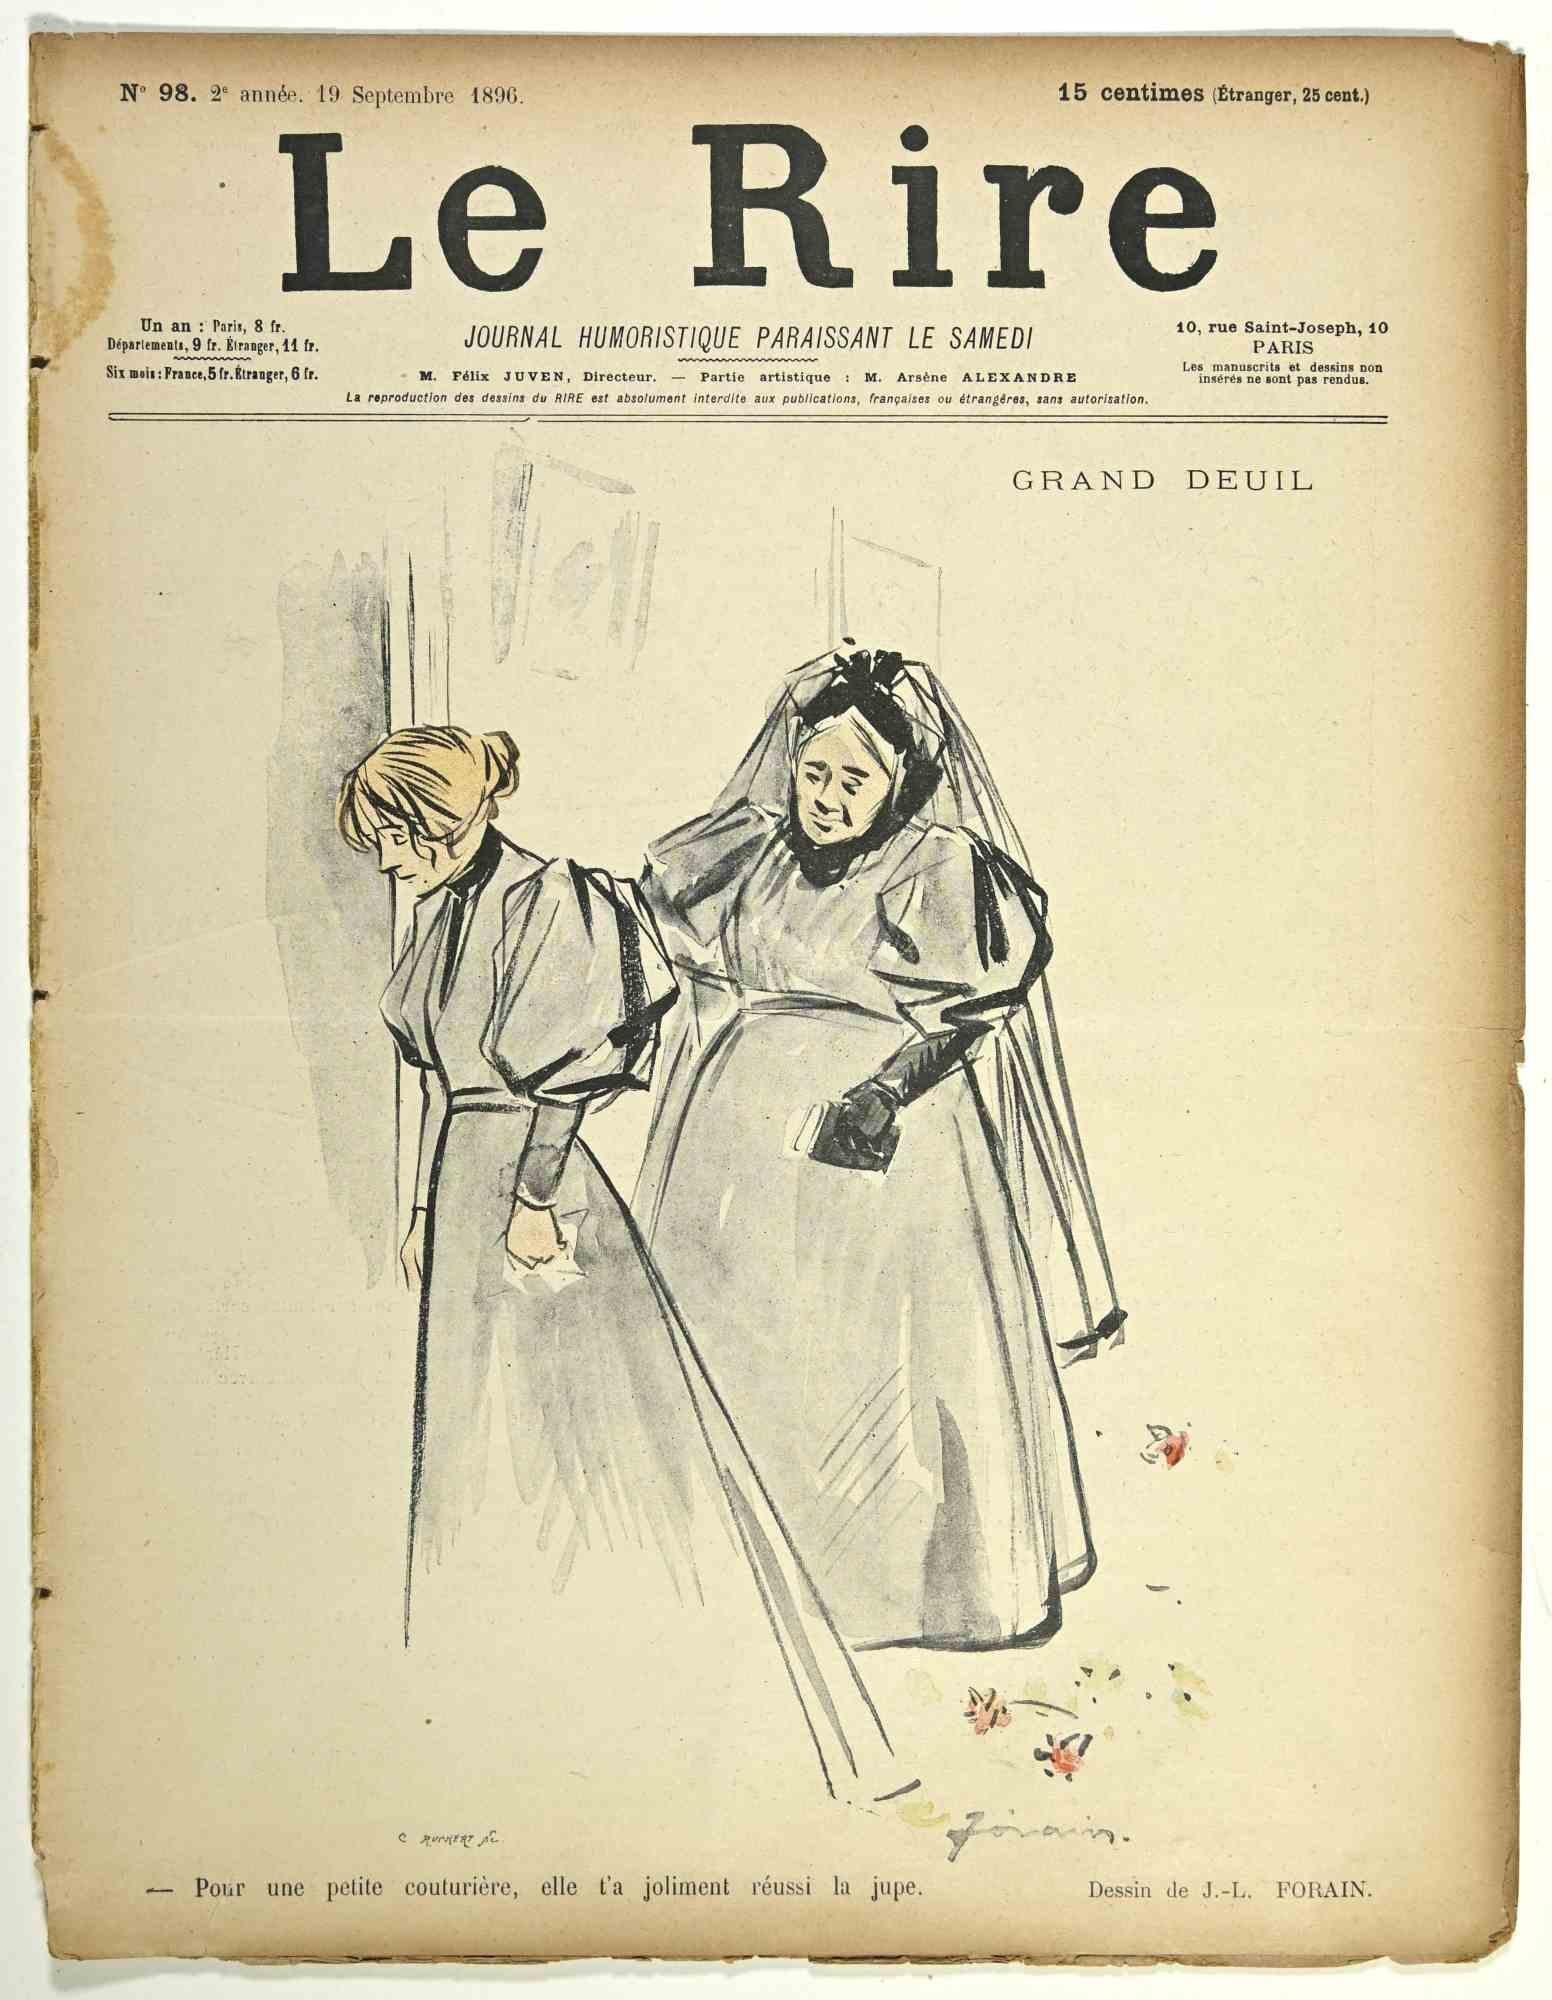 Le Rire - Vintage Comic Magazine - 1896 - Art by Jean Luis Forain